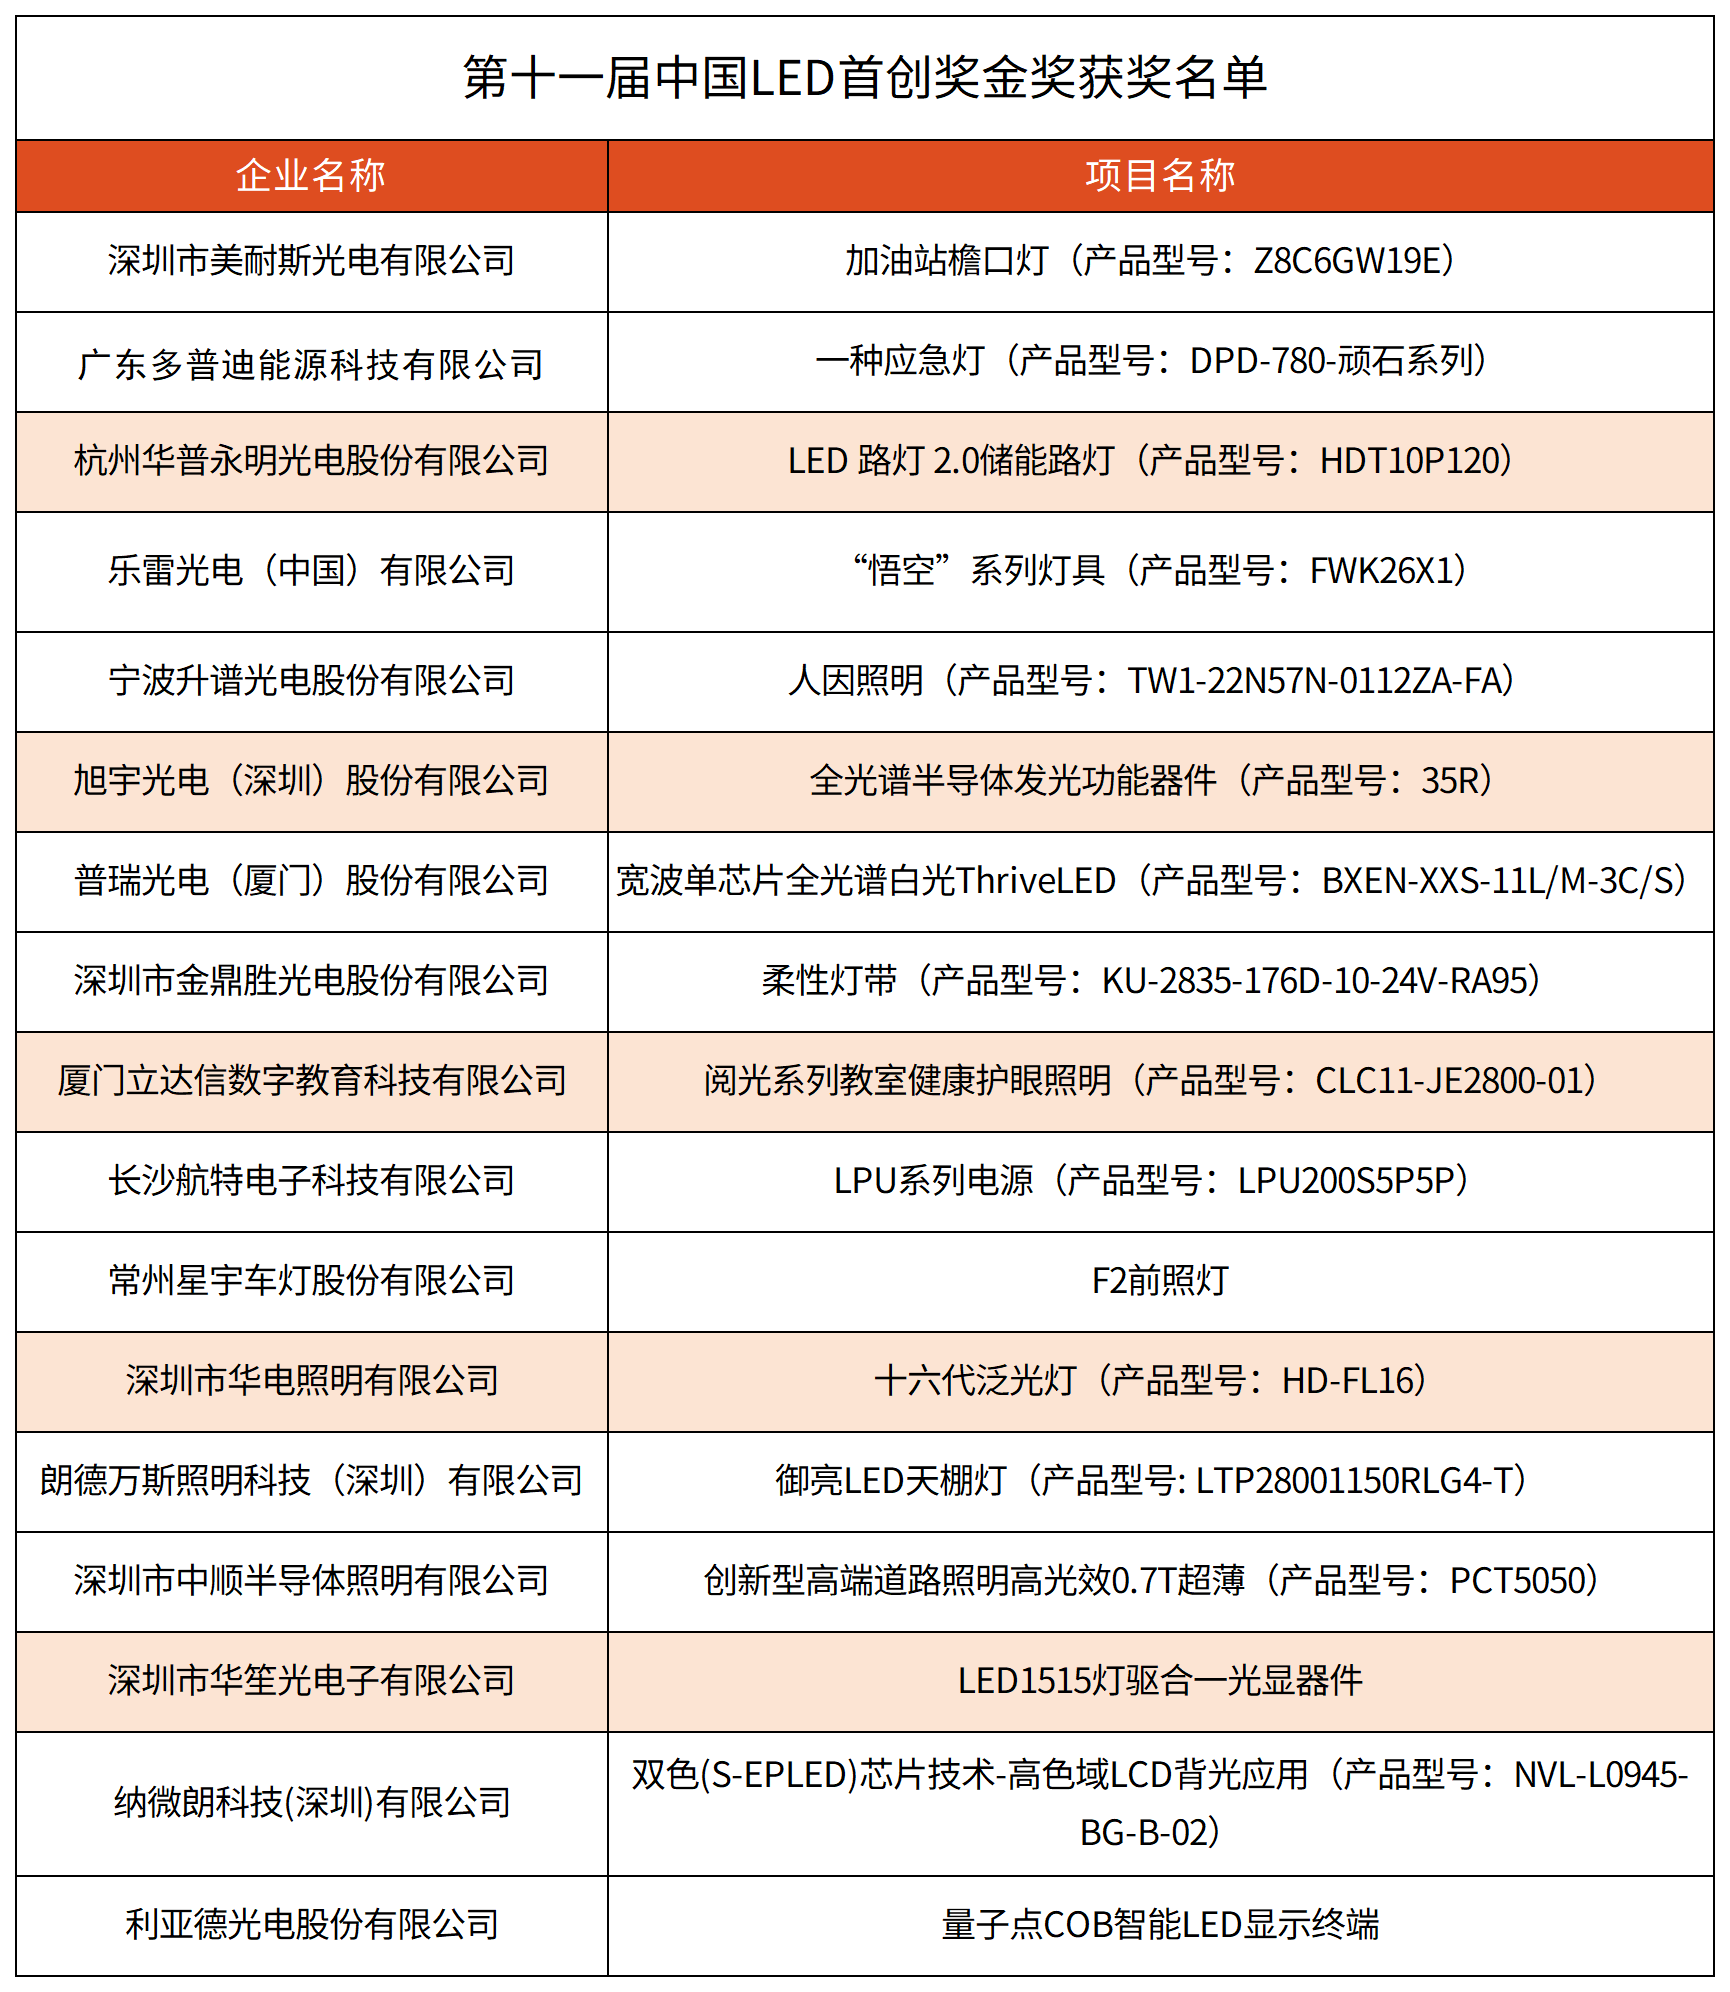 第十一届中国LED首创奖所有奖项获奖名单0612编辑版配图_金奖名单17家.png